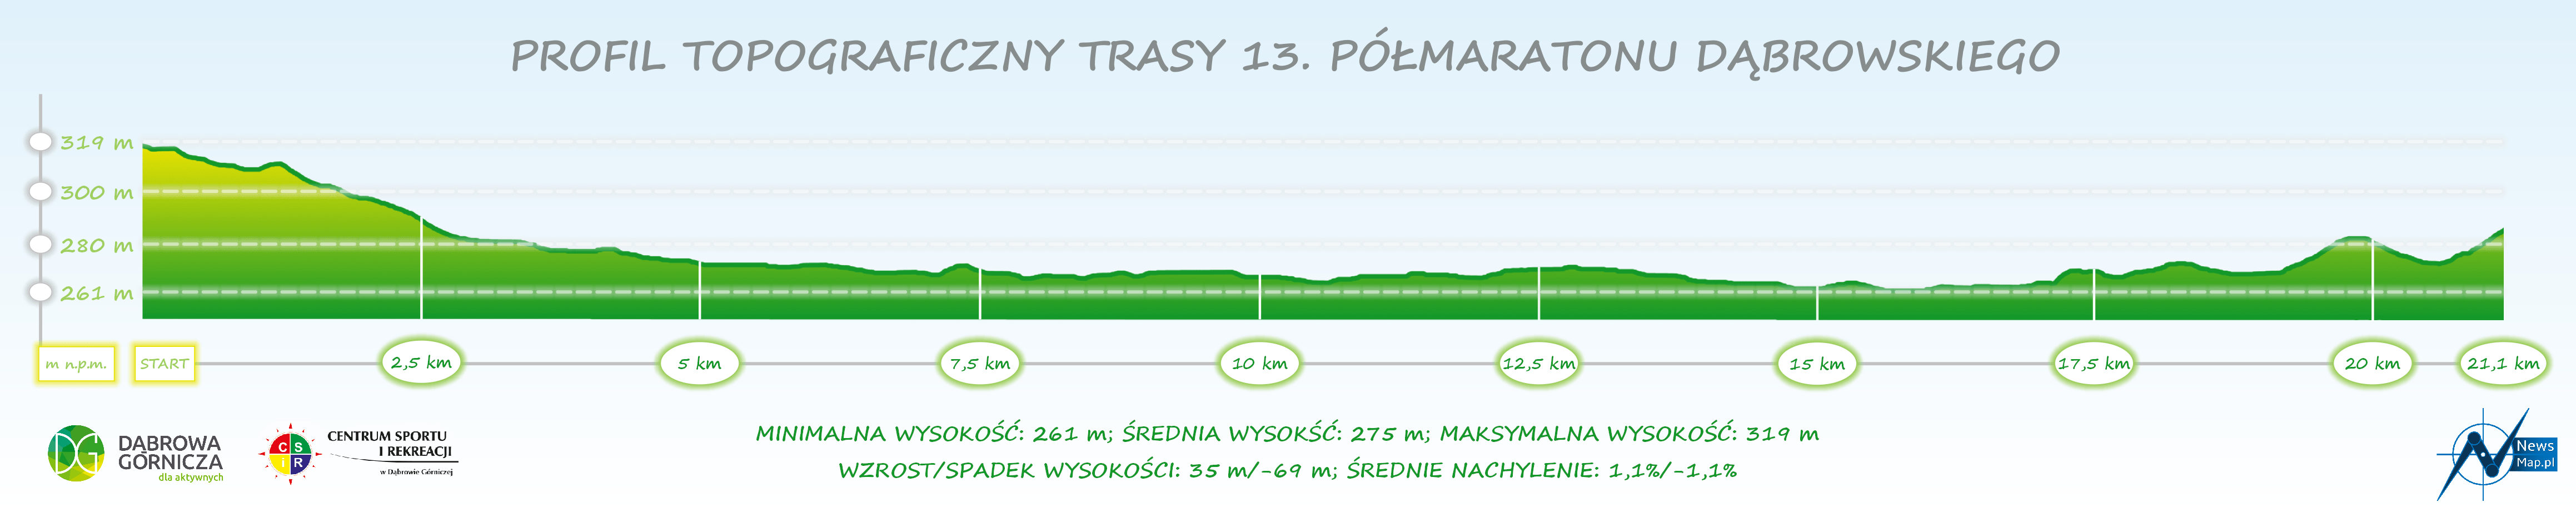 13. Półmaraton Dąbrowski - profil topograficzny